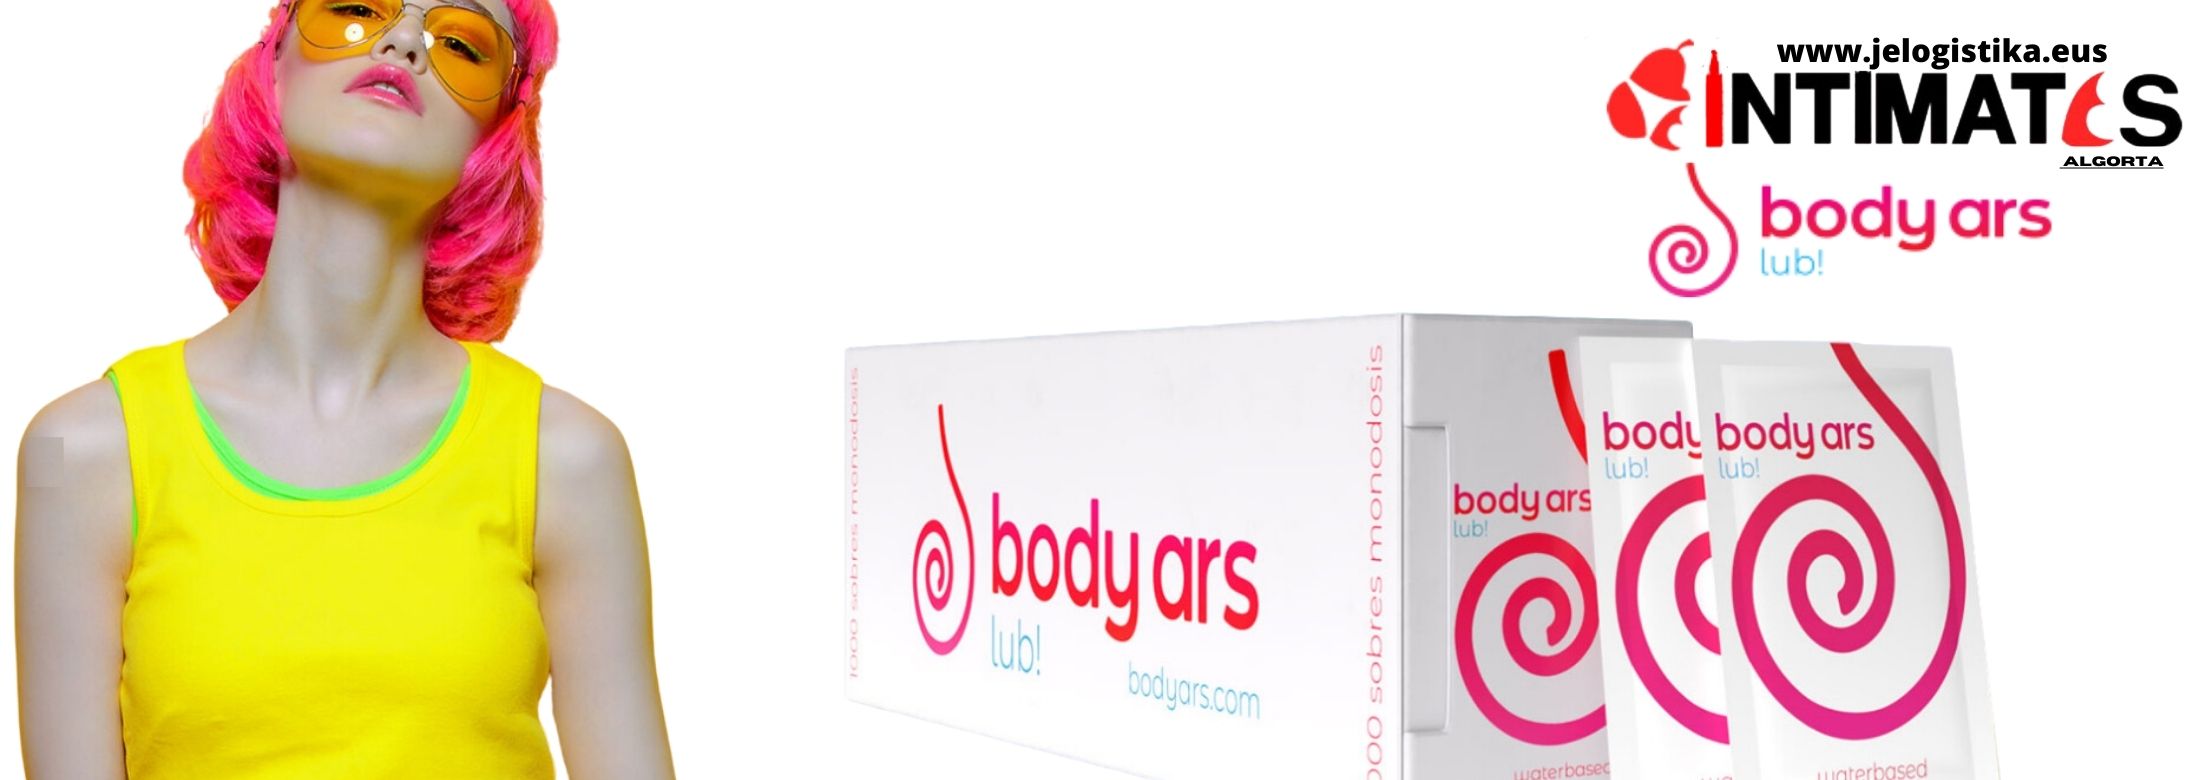 Body Ars, tiene gran variedad de productos principalmente cosméticos, especialmente diseñados para ofrecer a los consumidores un universo de sensualidad y que puedes adquirir en intimates.es "Tu Personal Shopper Erótico Online"